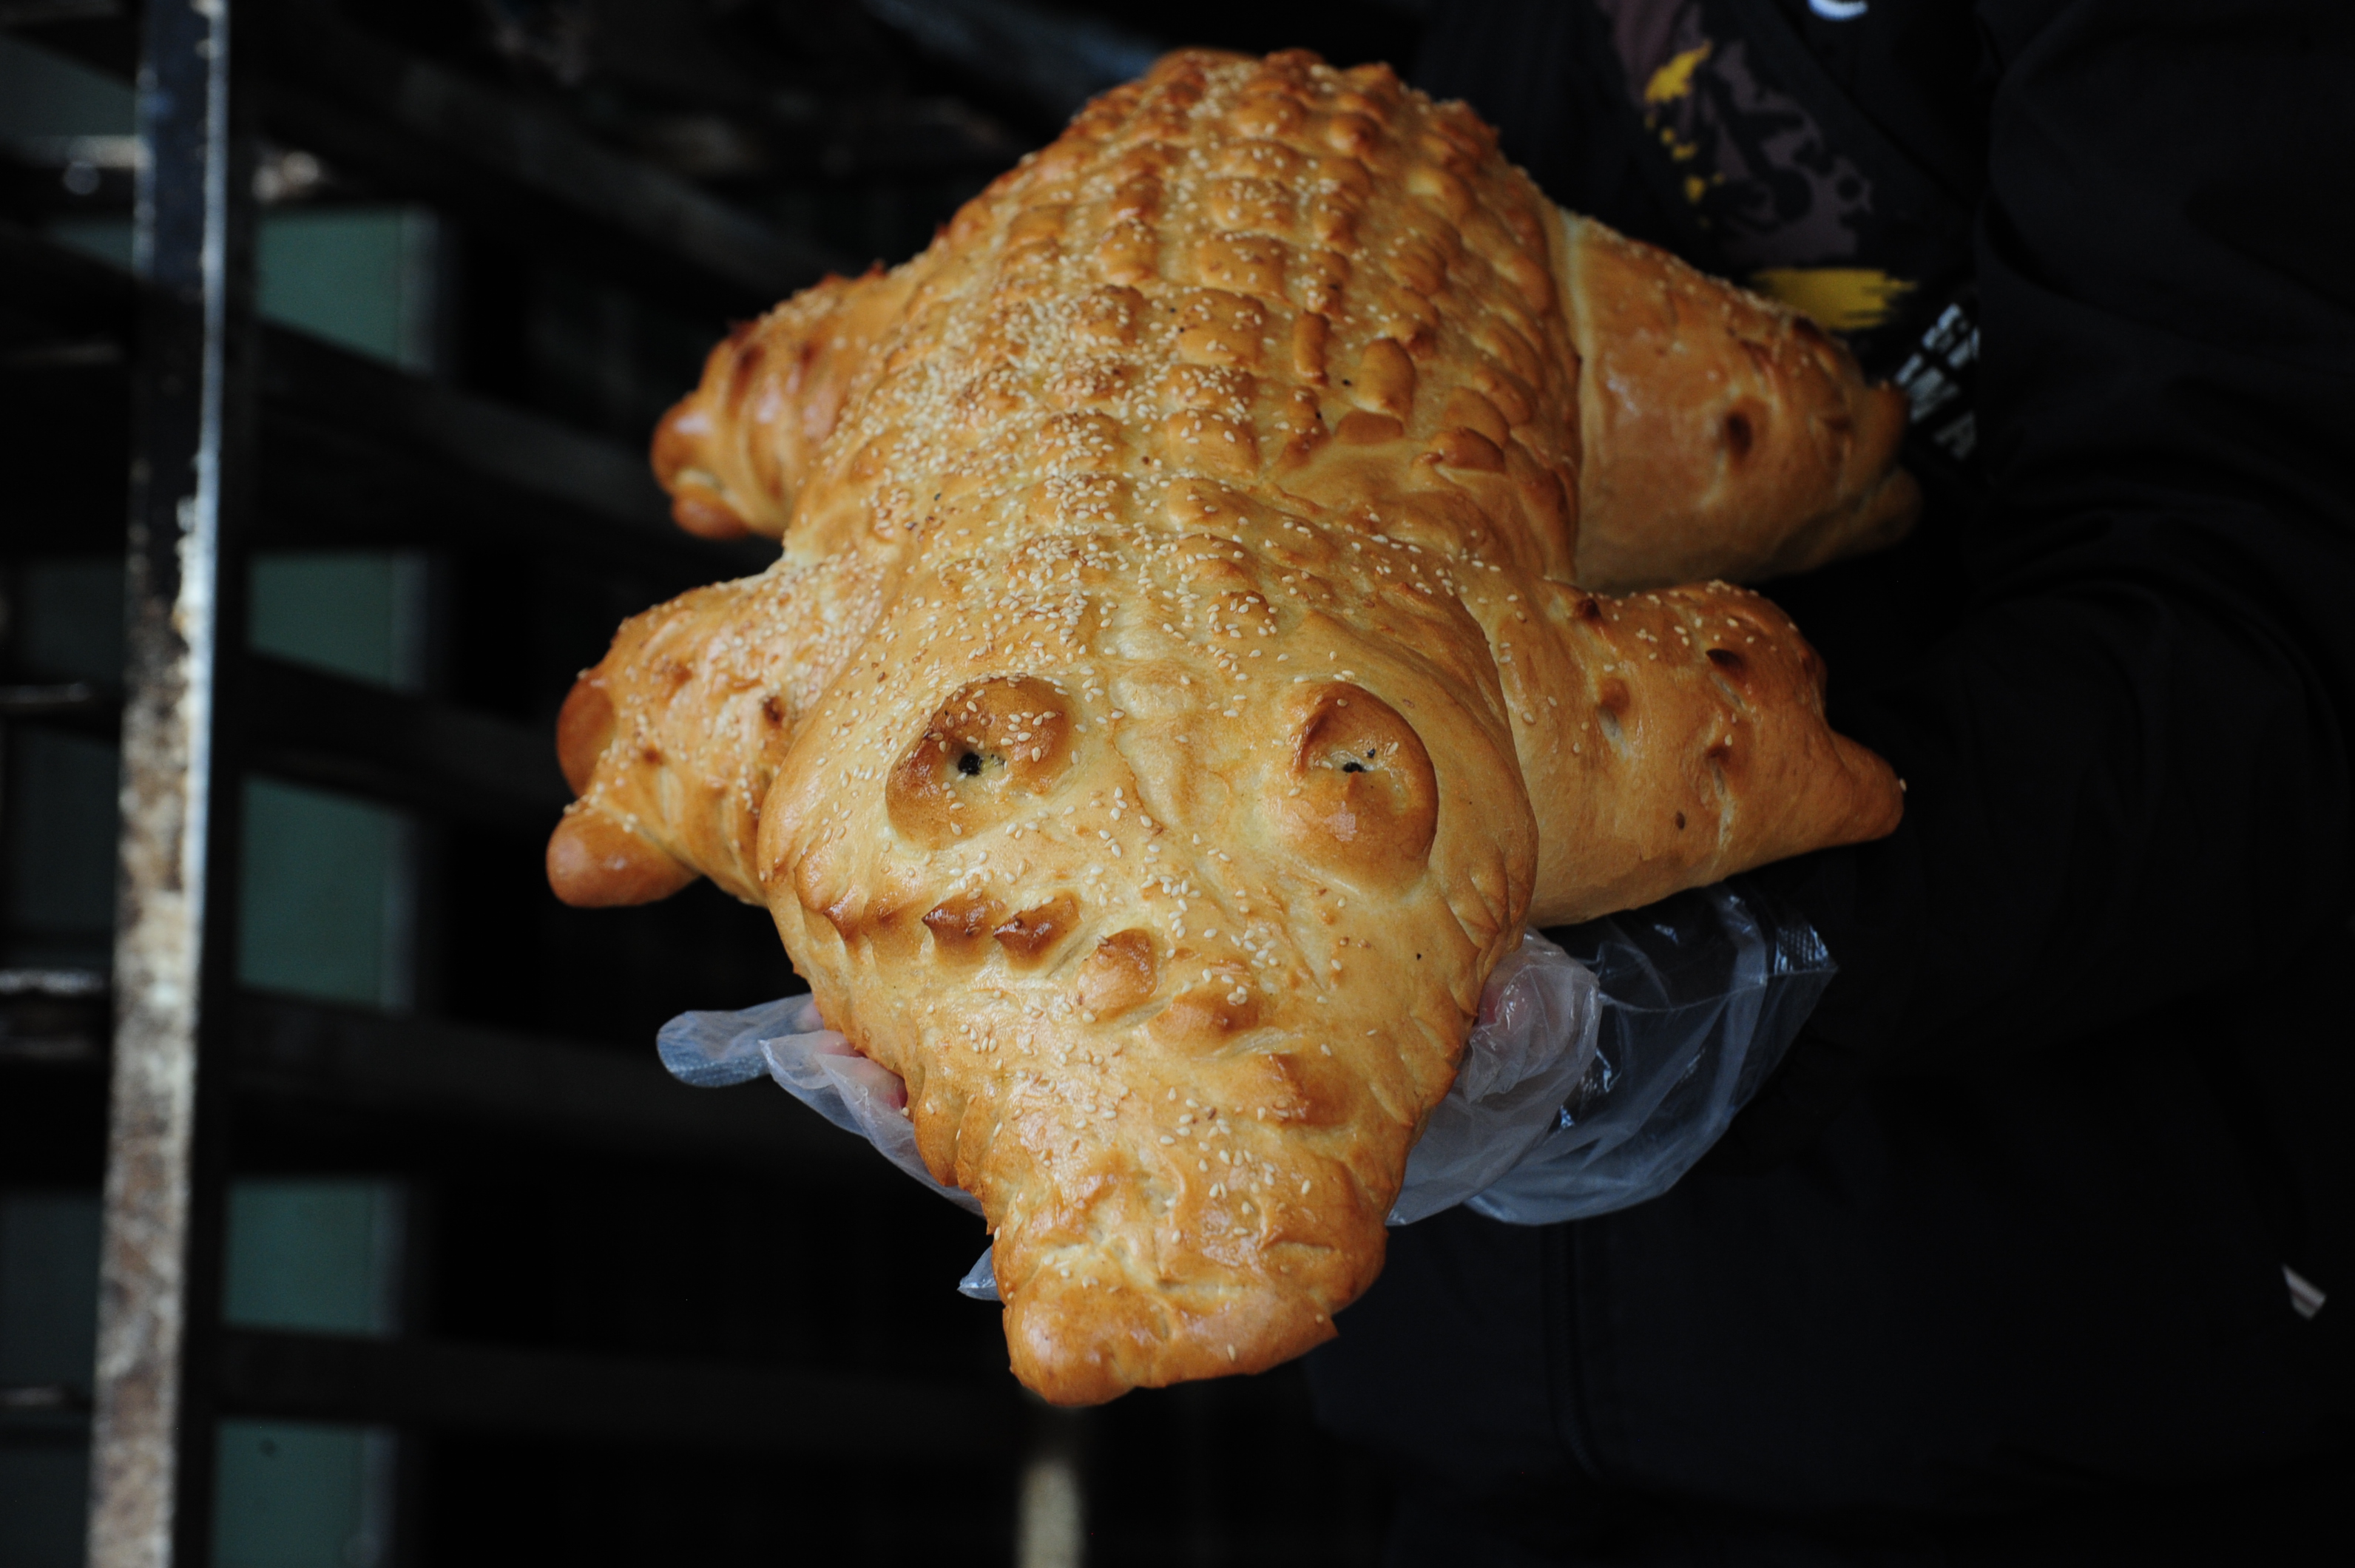 Bánh mì cá sấu khổng lồ gây sốt ở miền Tây